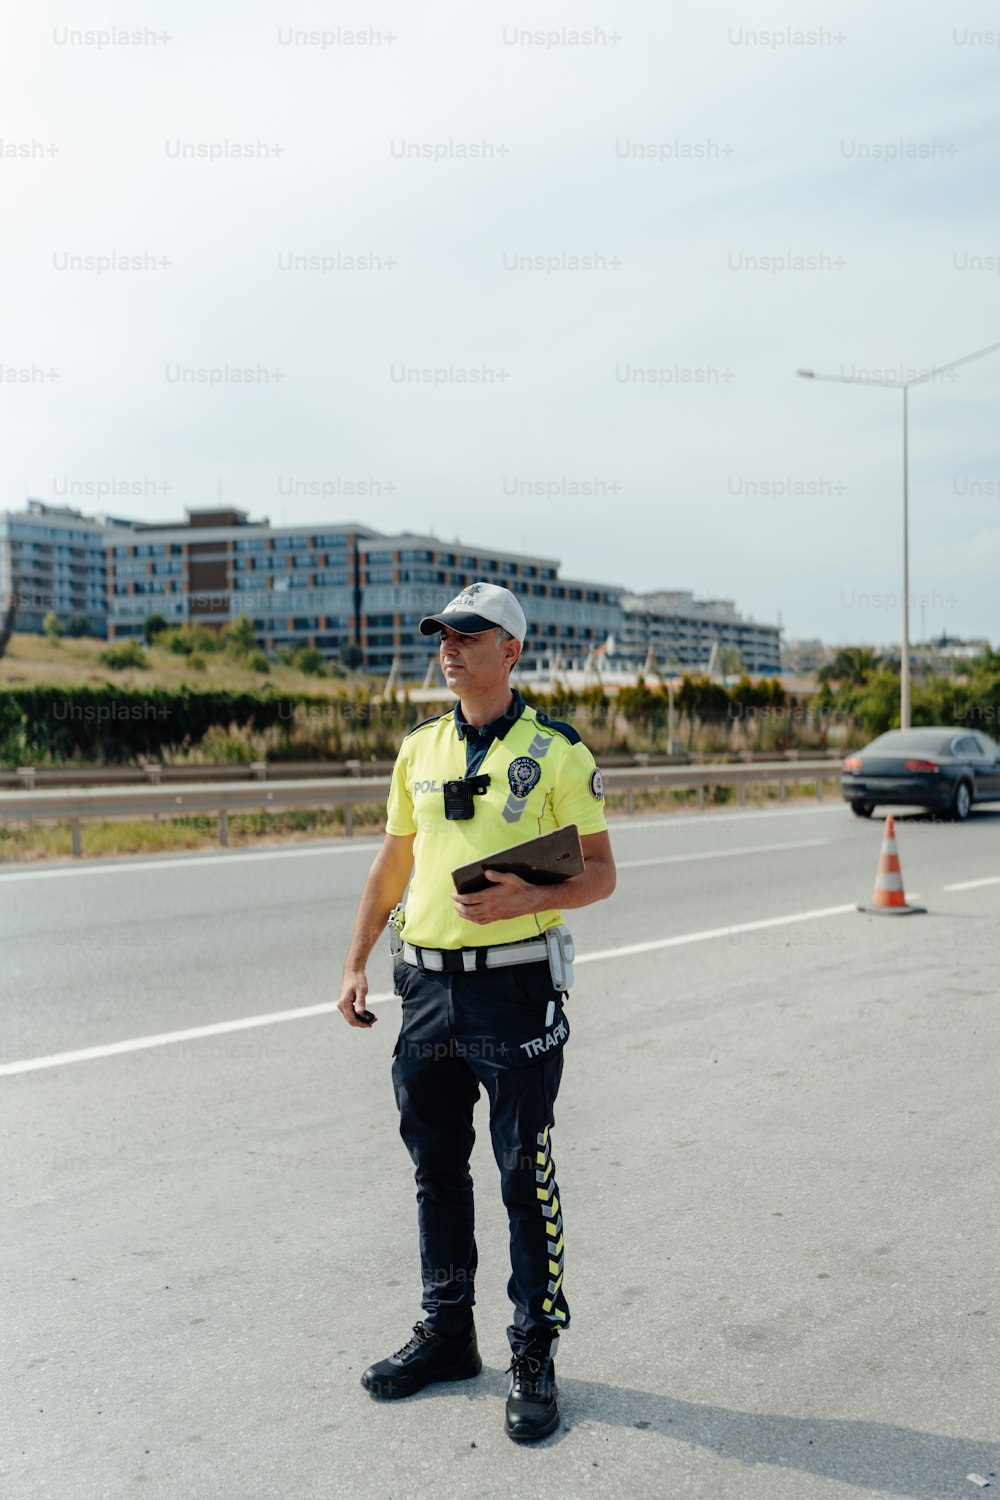 Un oficial de policía parado al costado de la carretera